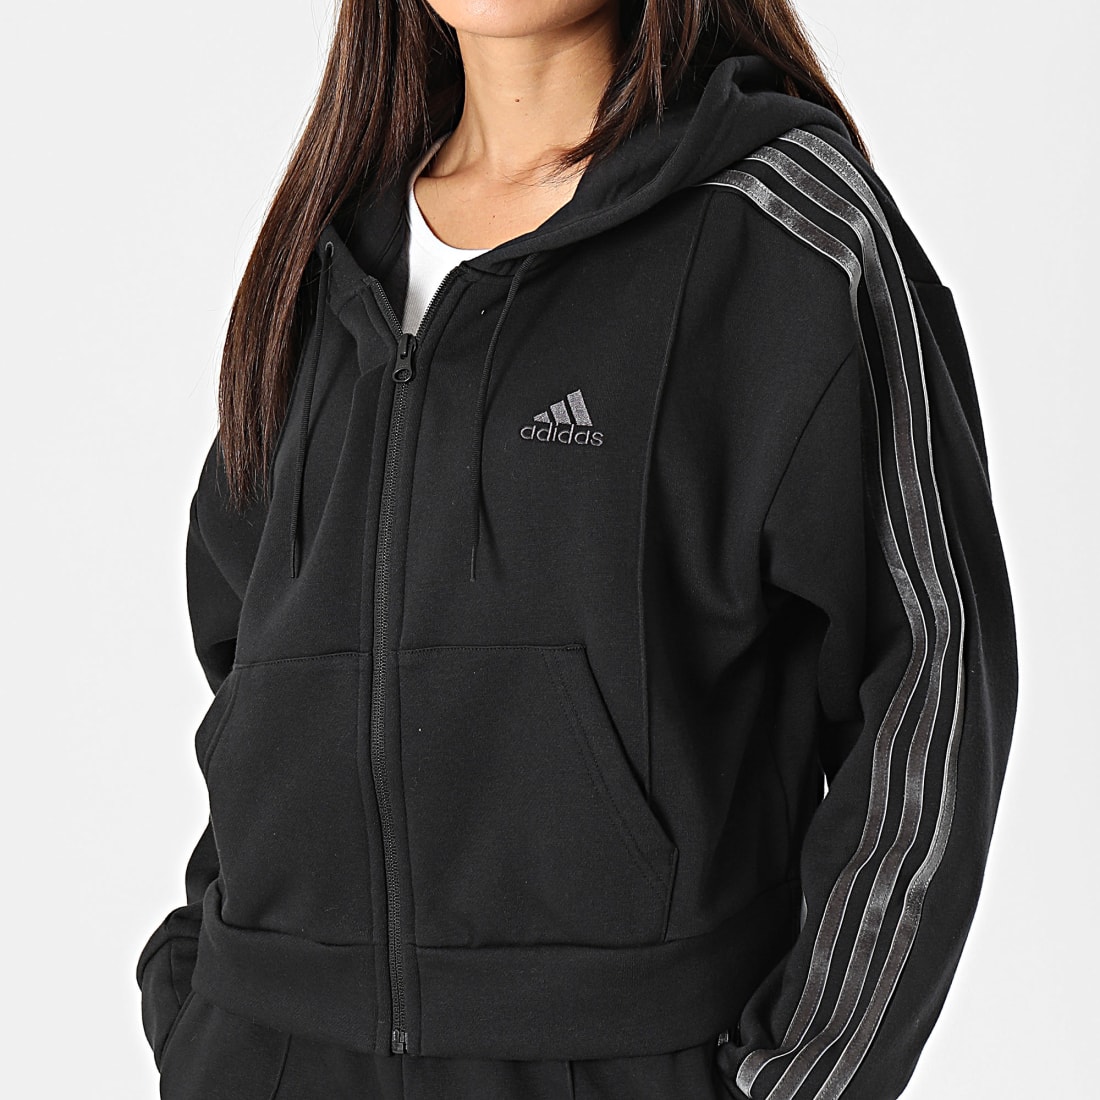 Adidas Costume Vêtement de Sport Energize, Femme - (Noir/Blanc)